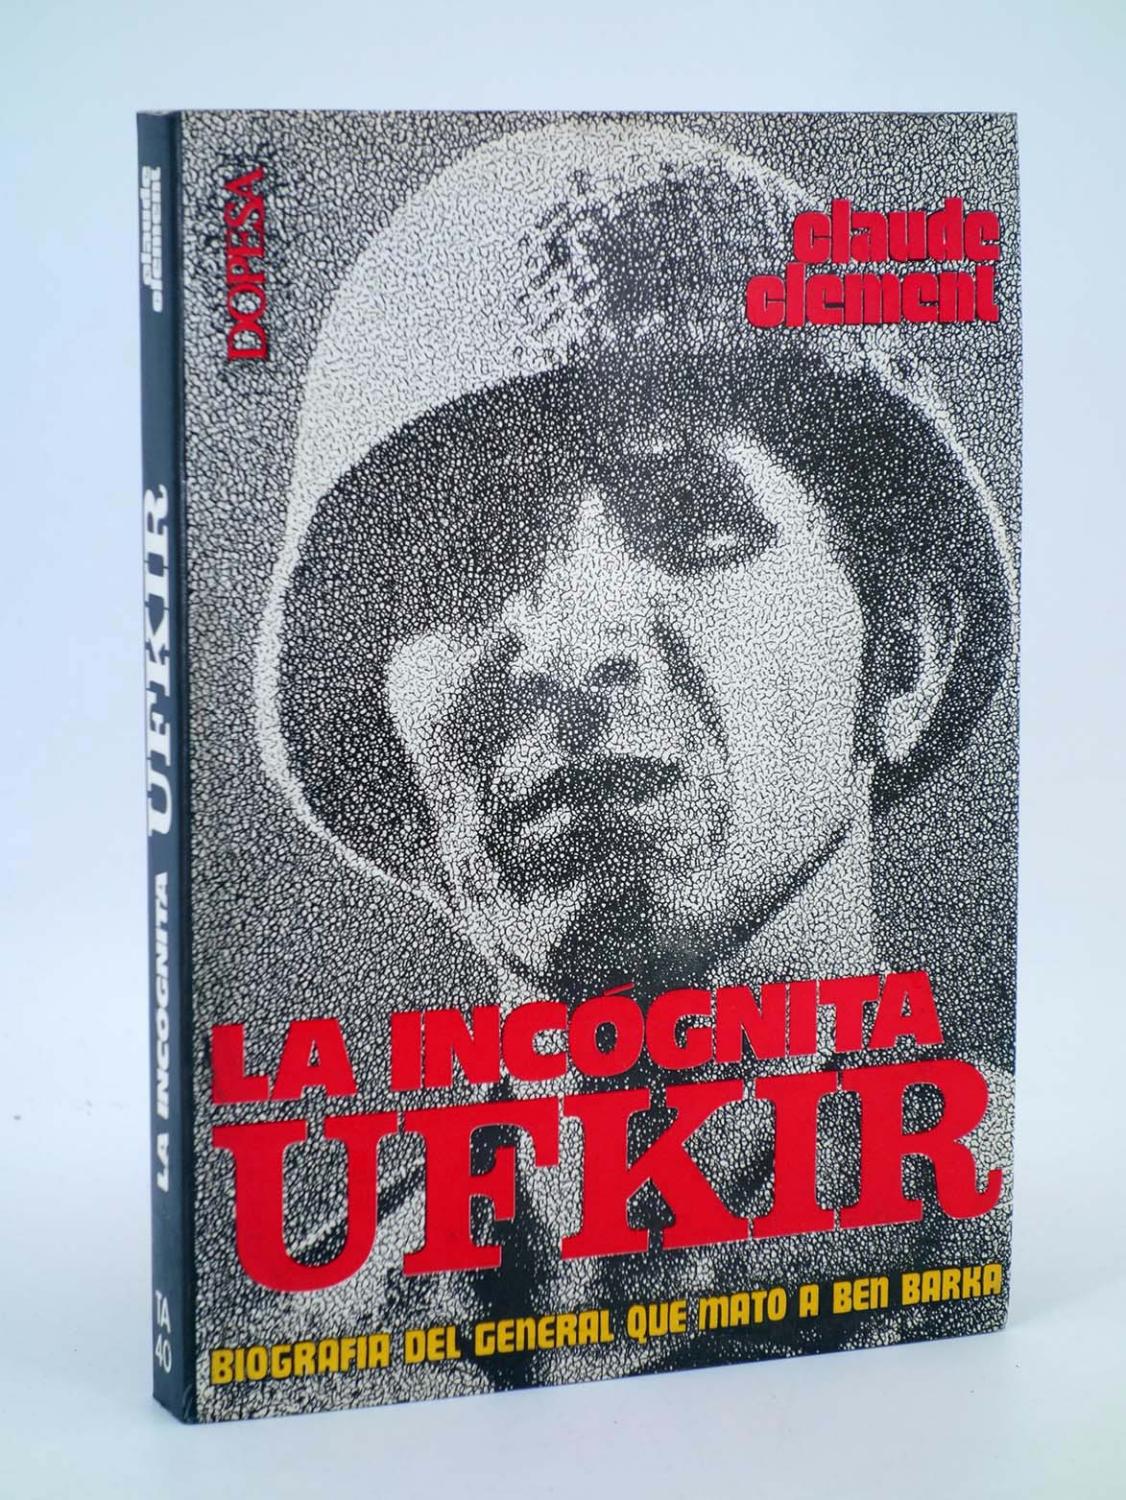 TA 40. LA INCÓGNITA UFKIR. Biografía del general que mató a Ben Barka (Claude Clement) Dopesa, 1975 - Claude Clement